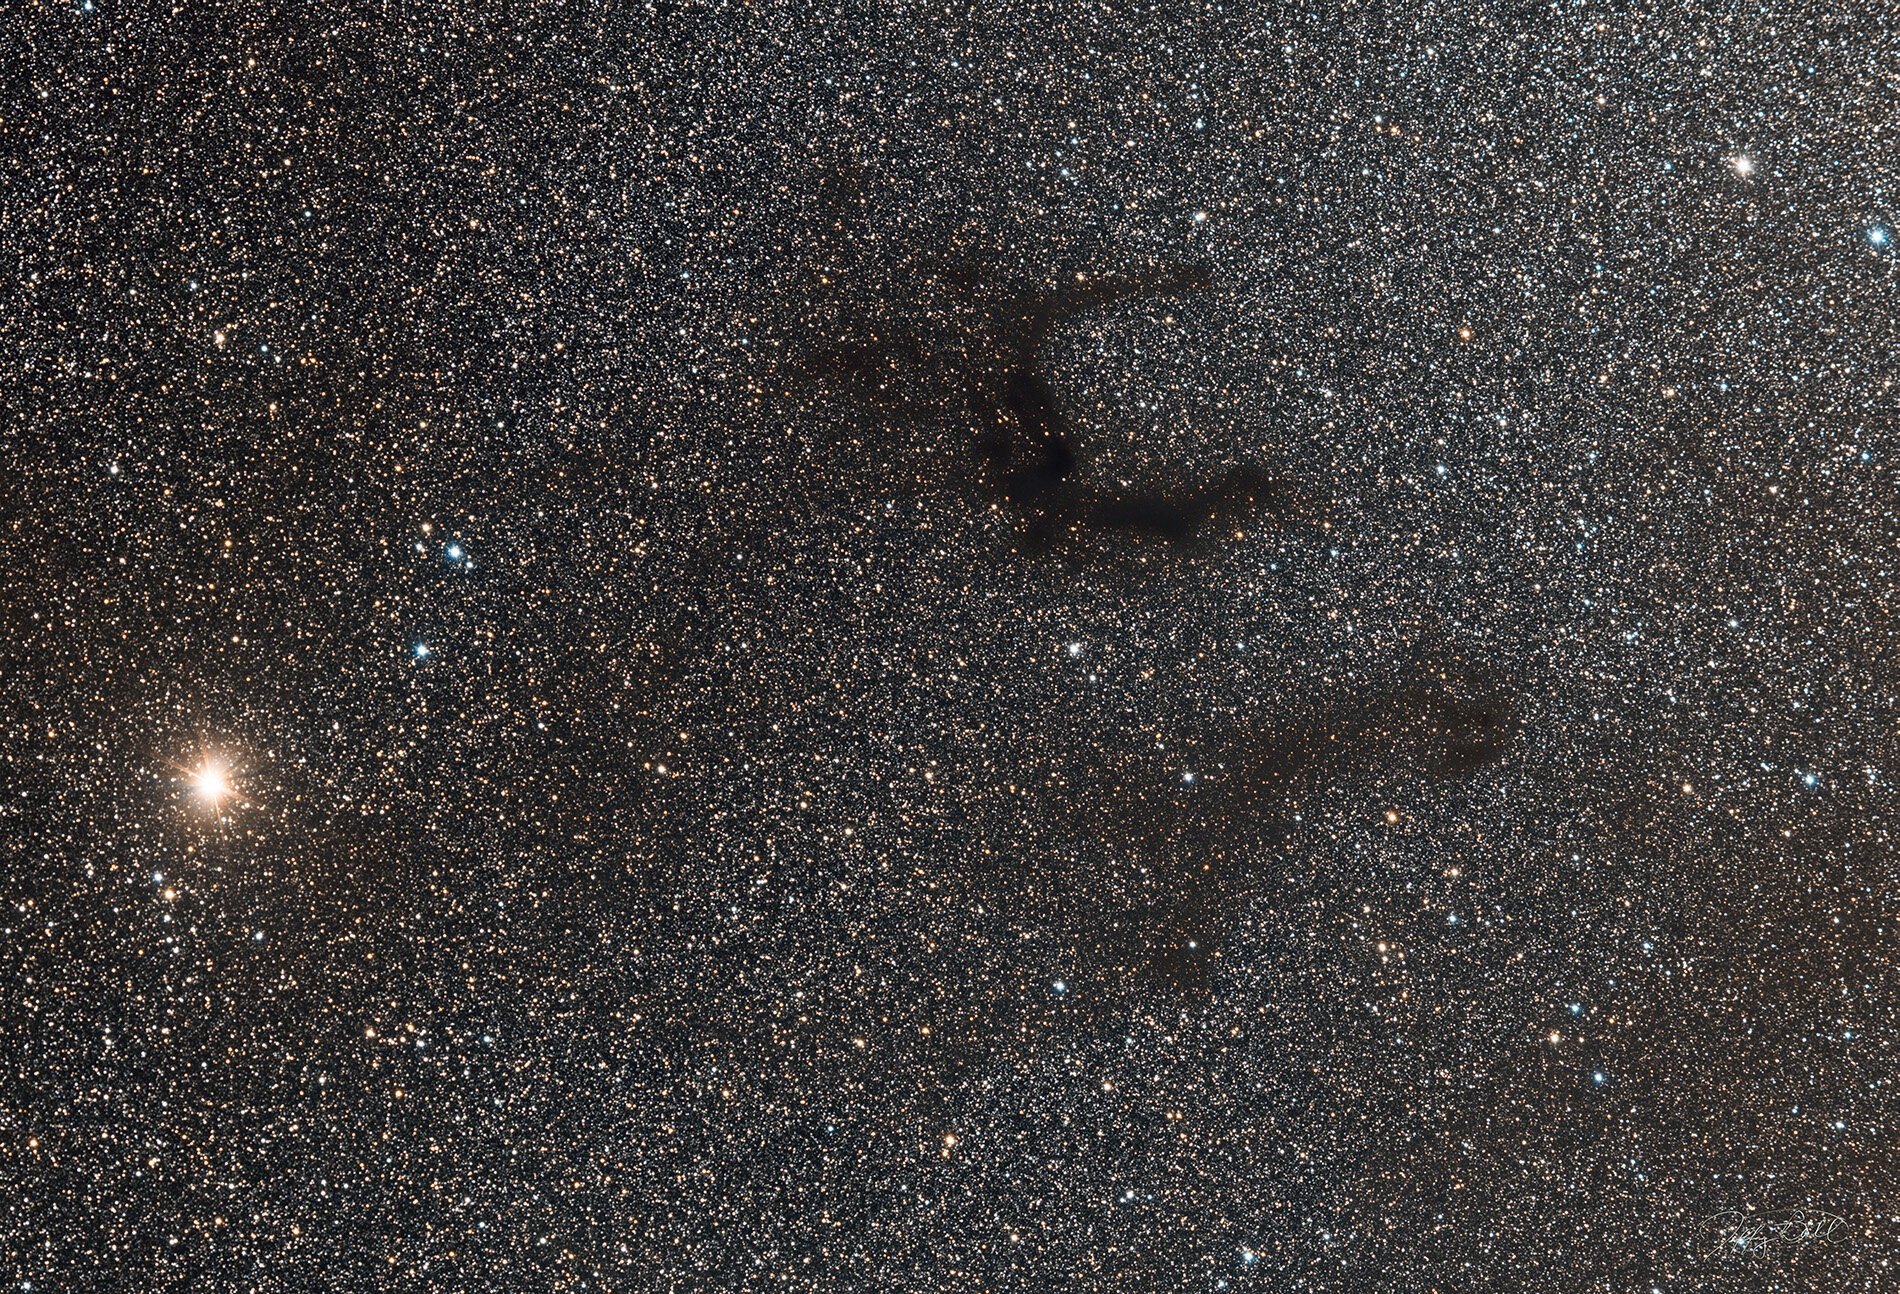 B143-Barnard's E Dark Nebula